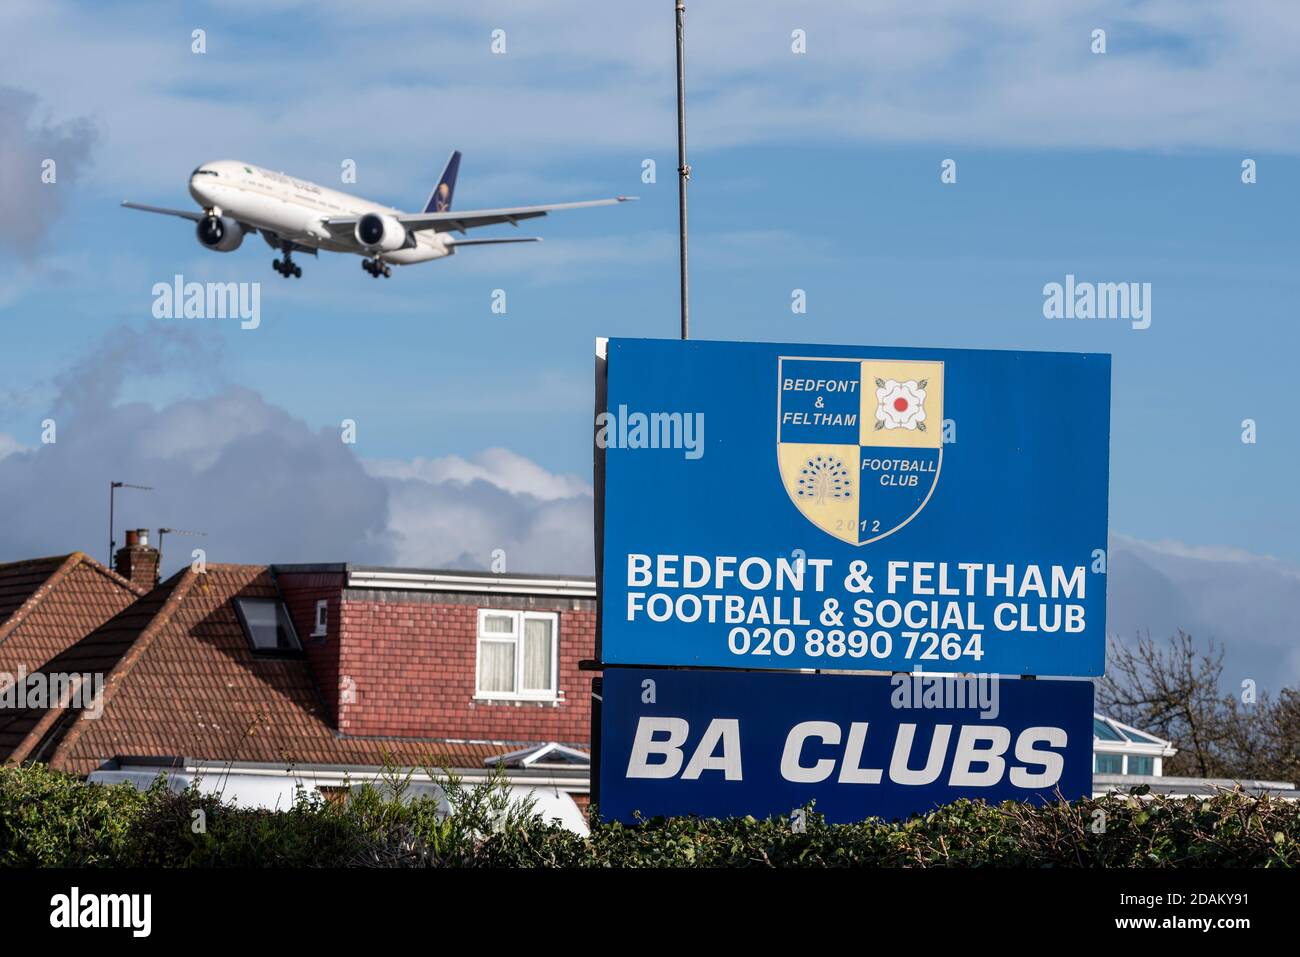 Aereo jet Airliner in avvicinamento per atterrare all'aeroporto Heathrow di Londra, Regno Unito, oltre Bedfont & Feltham Football & Social Club. BA Club. Basso sopra casa Foto Stock